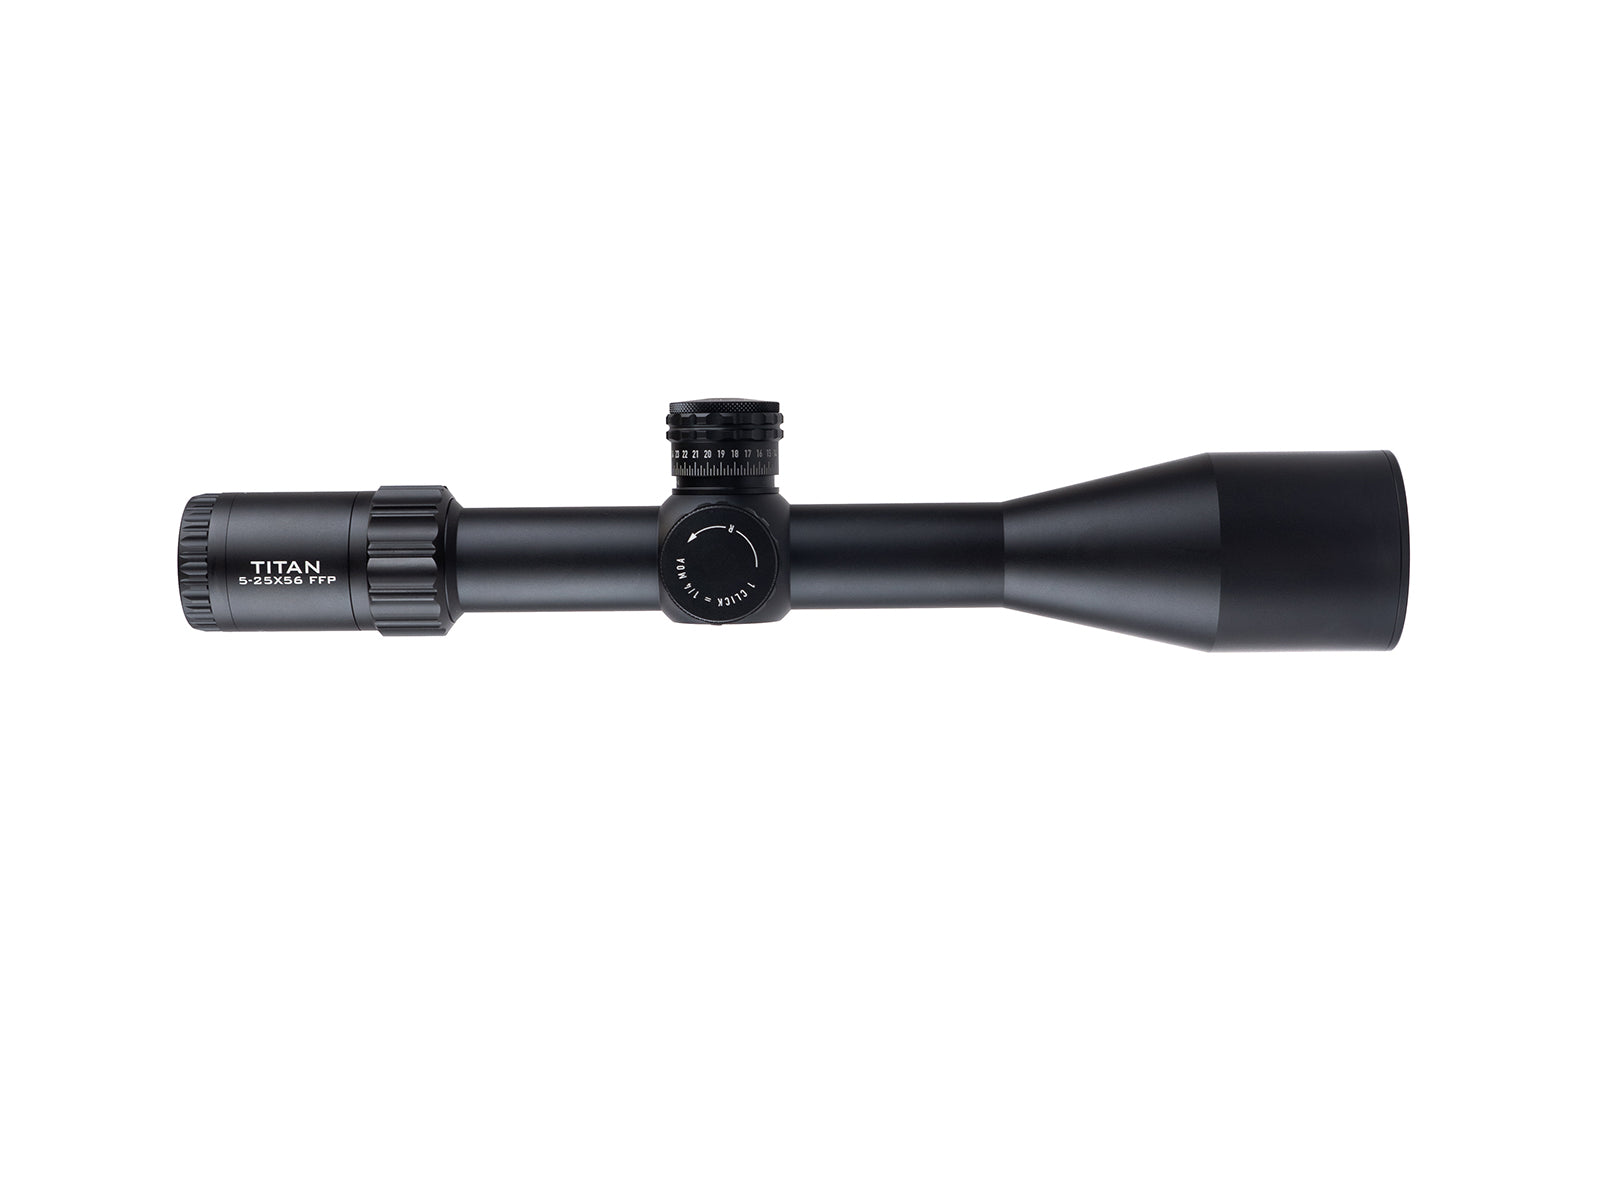 Element Optics titan rifle scope 910 airgun tuning and repair